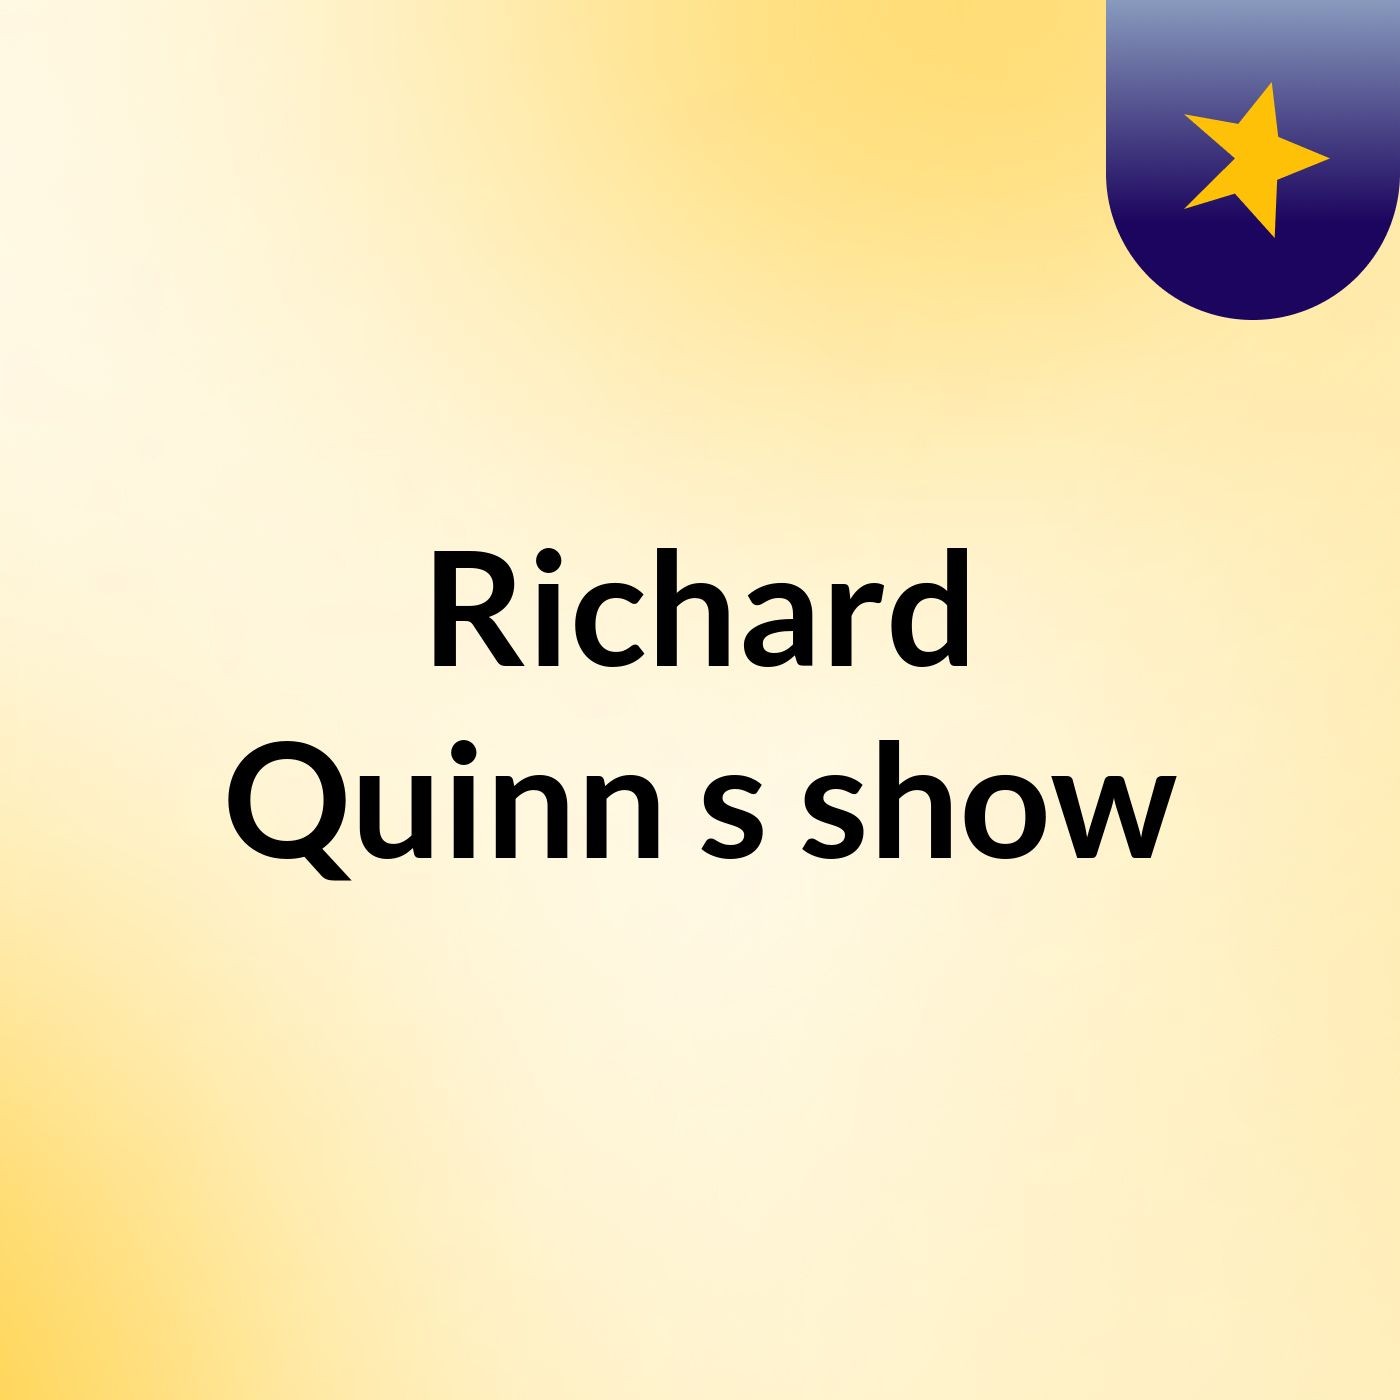 Richard Quinn's show